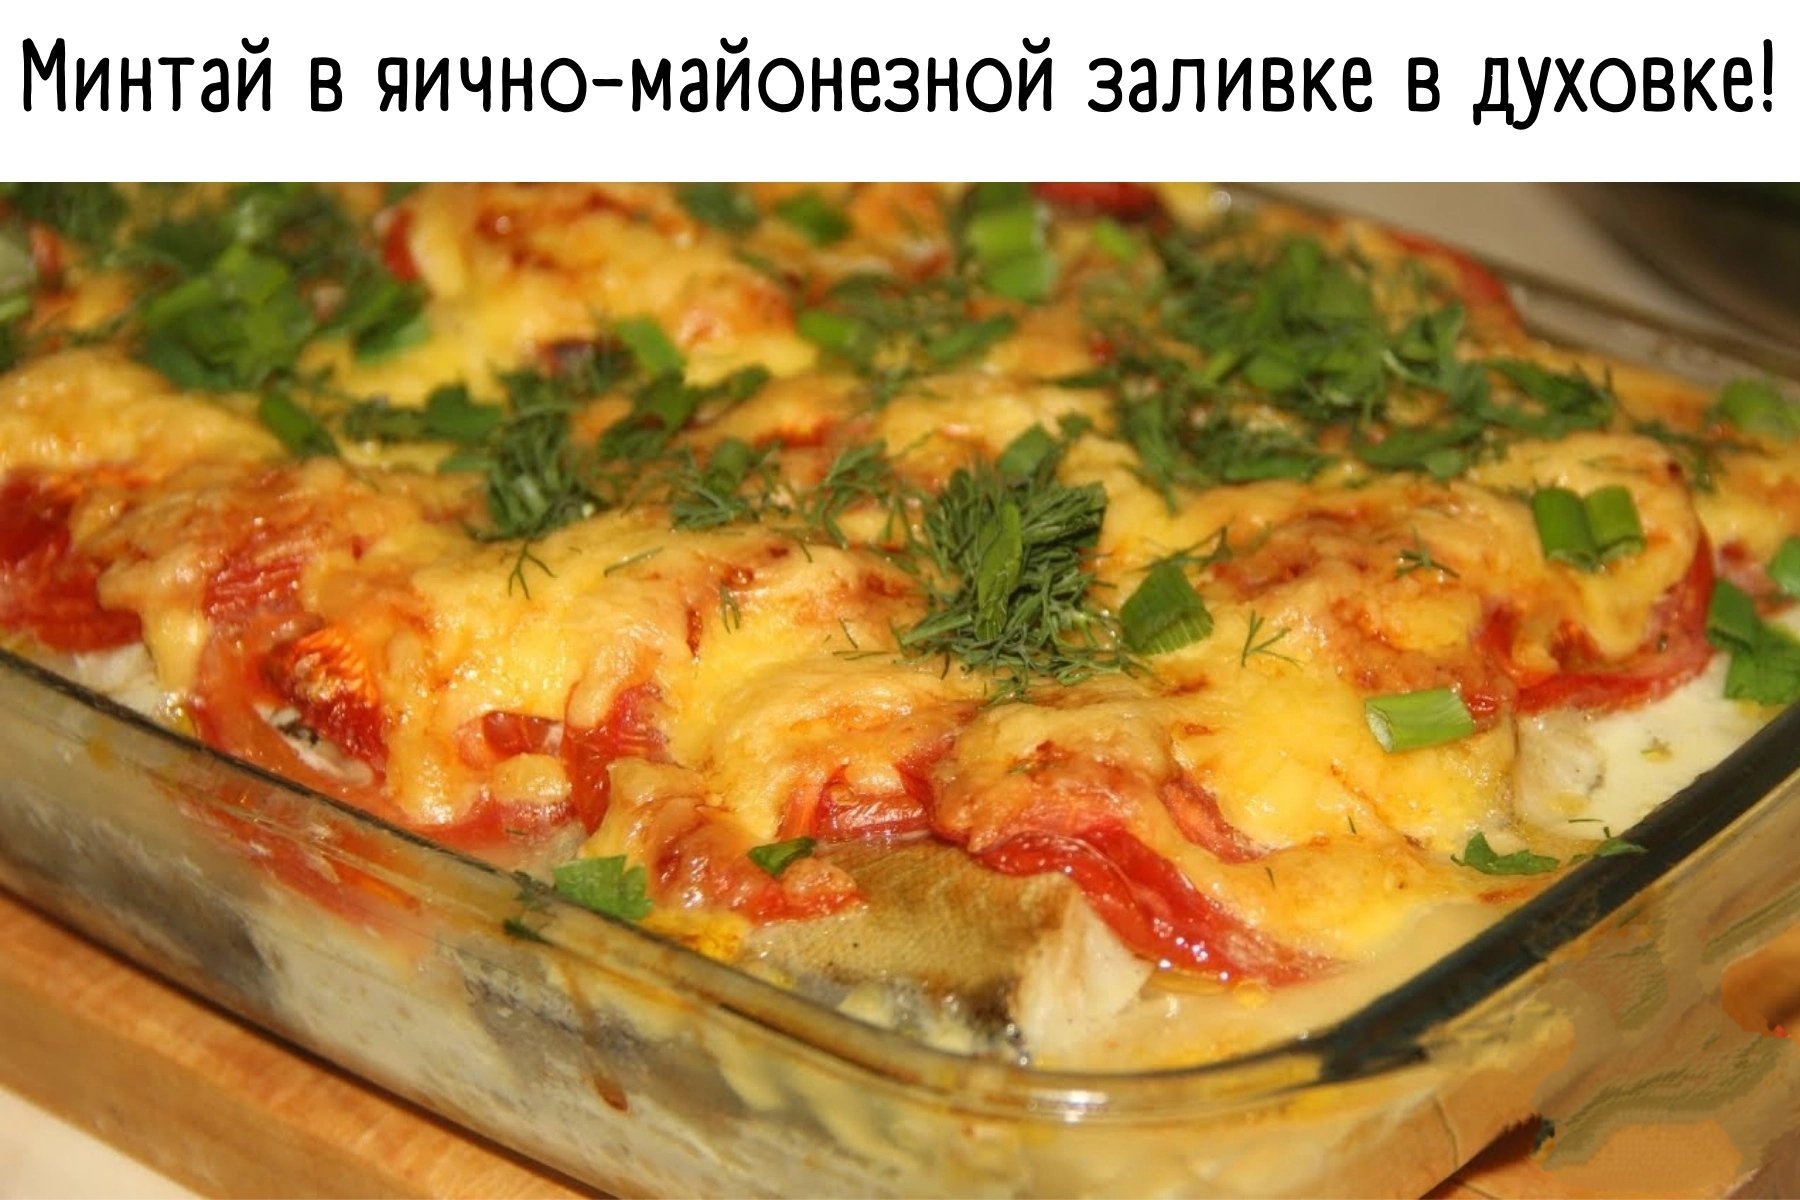 Картошка с рыбой минтай. Рыба минтай в духовке с овощами. Филе минтая в духовке с овощами. Минтай в духовке самый вкусный с овощами. Минтай с помидорами и сыром в духовке.